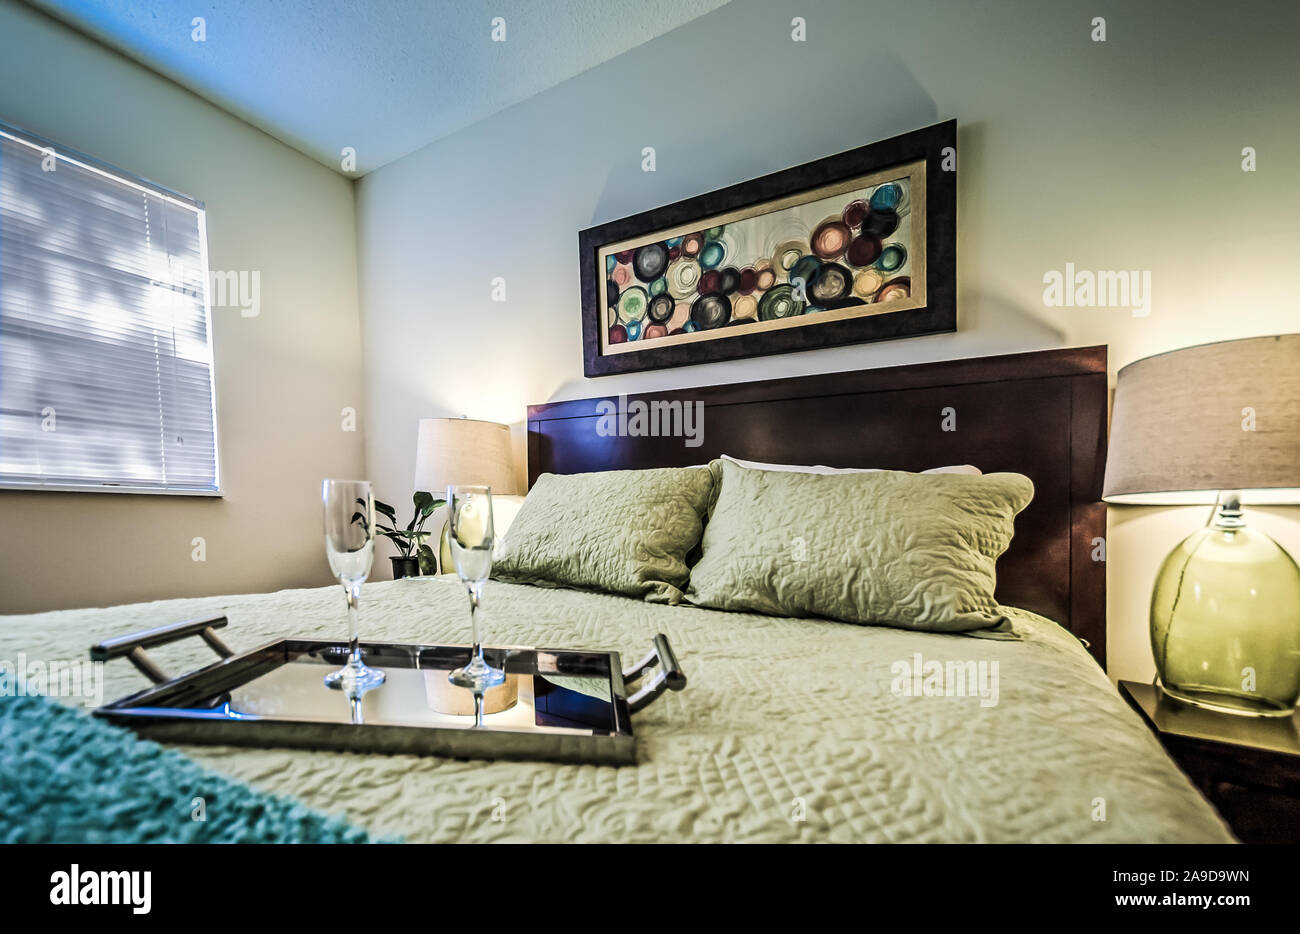 Ein Fach mit champagnergläser sitzt auf einem Bett in einem Schlafzimmer im Herbst Wald Apartments, auf Foreman Road in Mobile, Alabama. Stockfoto